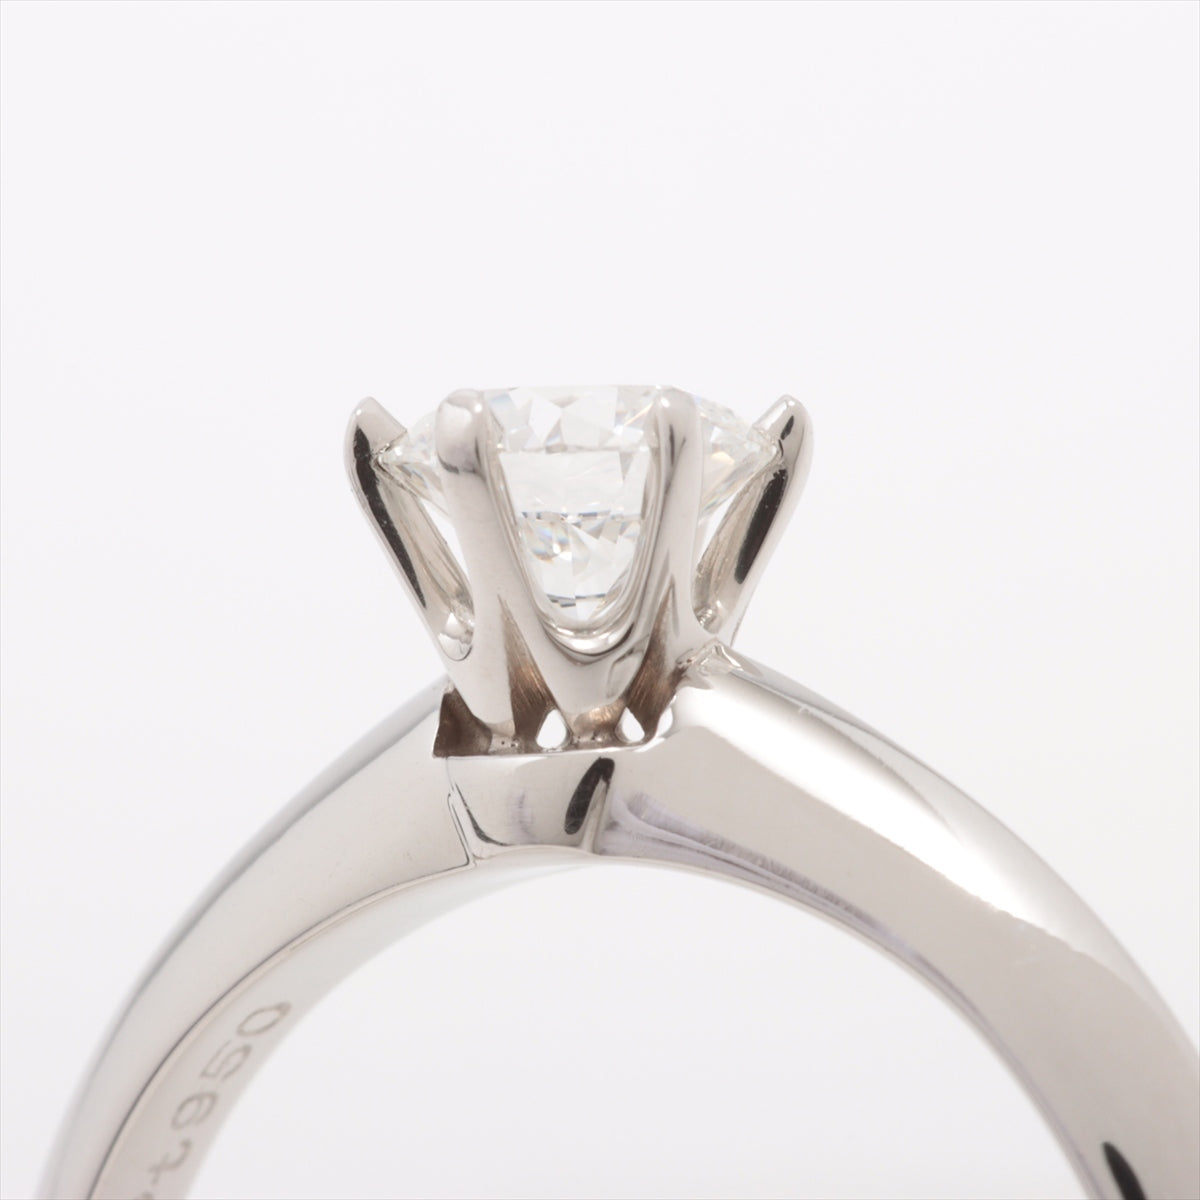 Tiffany Solitaire Diamond Ring Pt950 3.5g 0.41 E